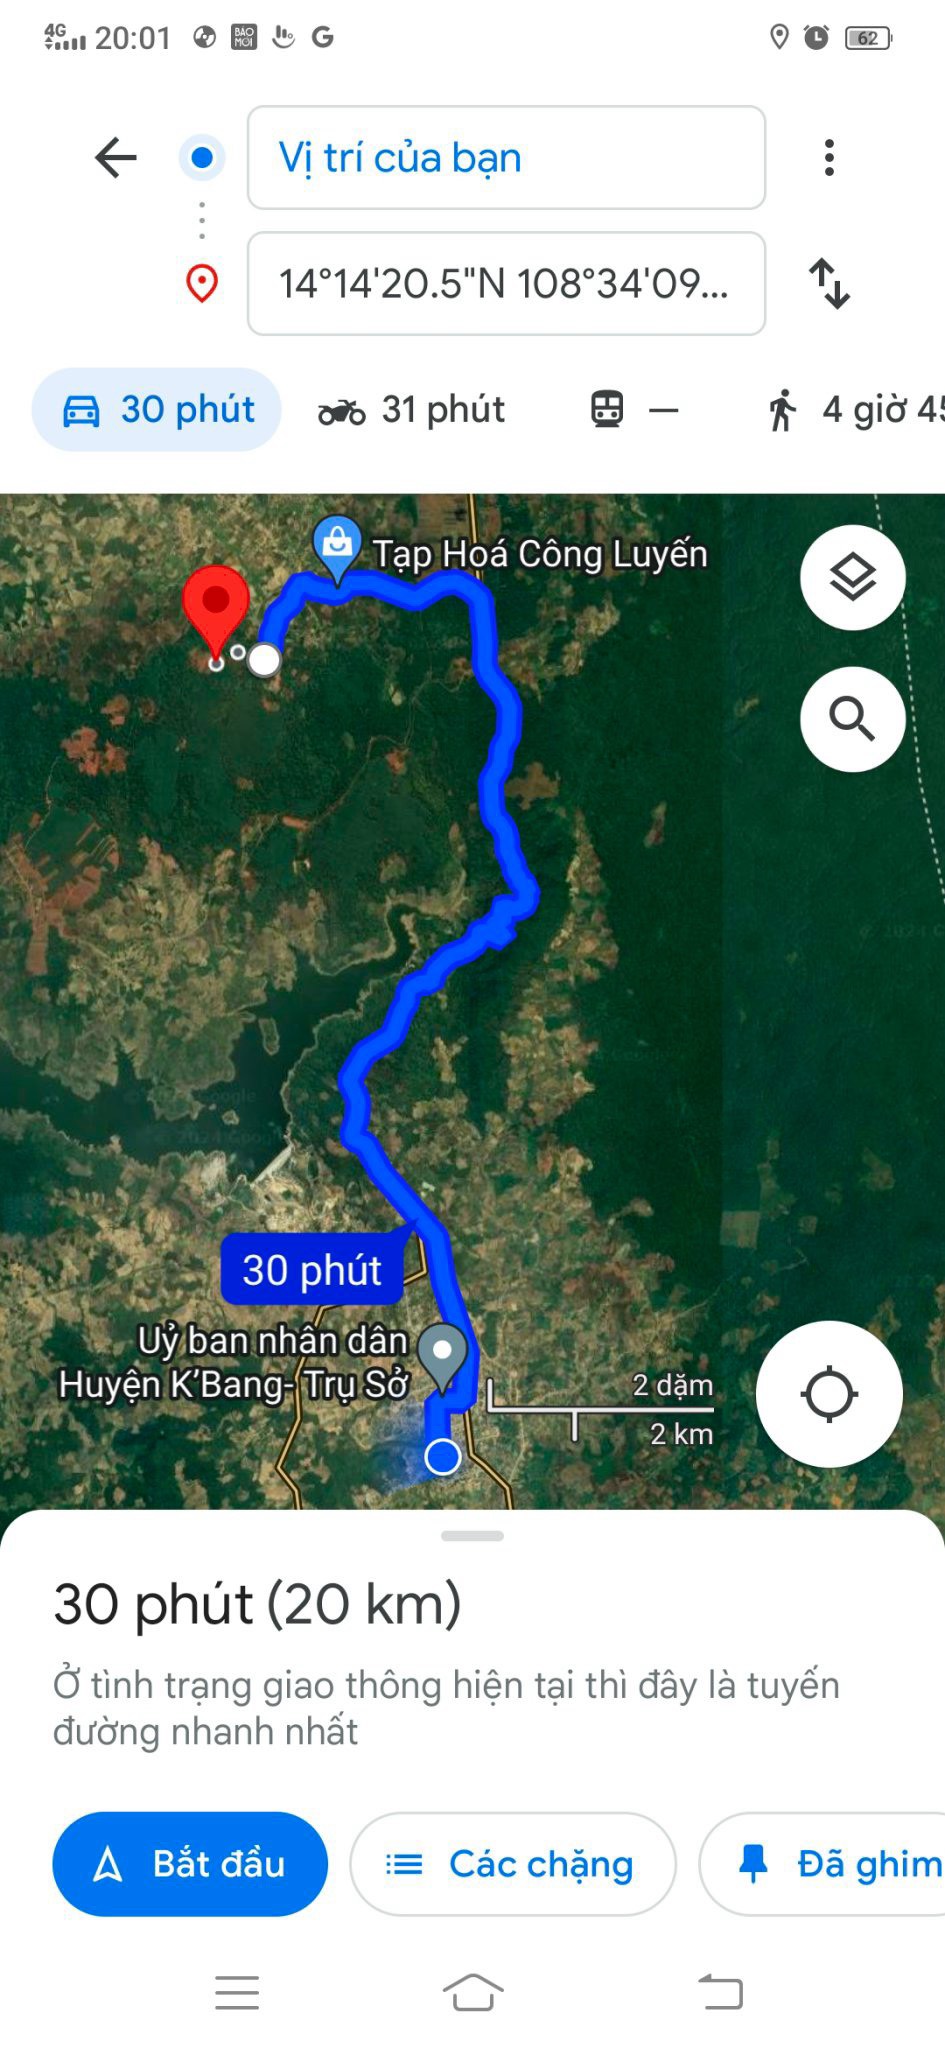 CHÍNH CHỦ Cần Bán 4,3ha Đất Đỏ Bazan Tại xã Đak Smar huyện KBang, Tỉnh Gia Lai. - Ảnh 1